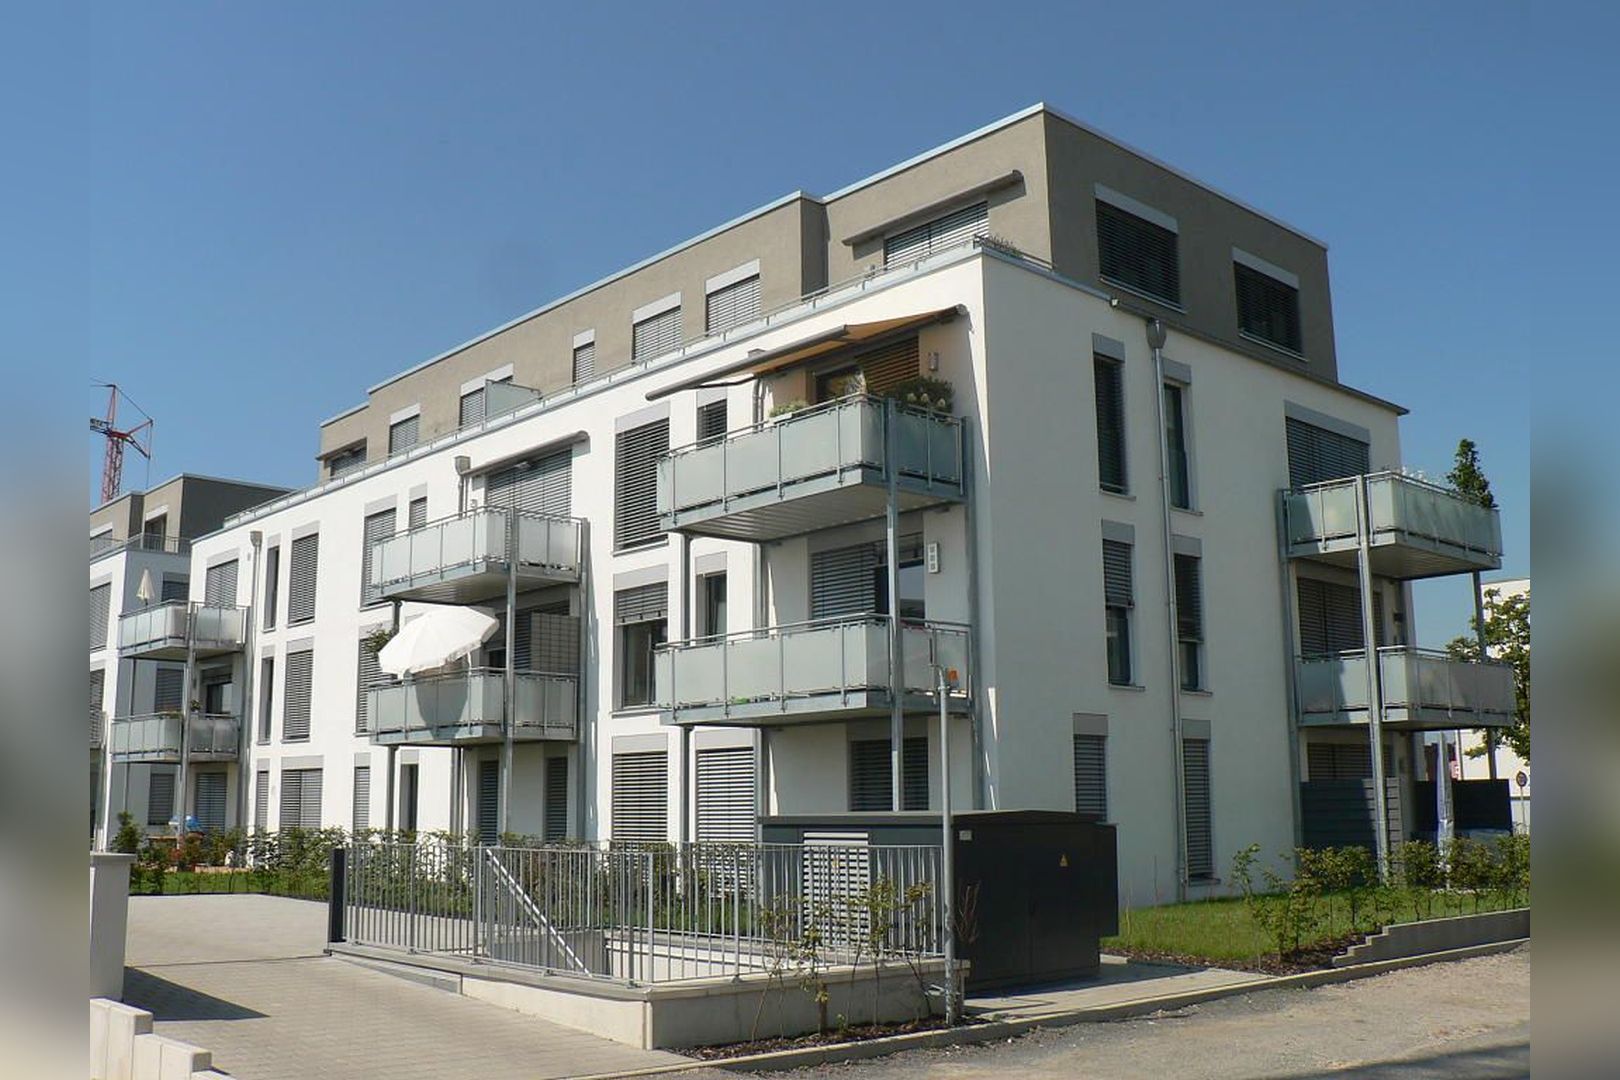 Immobilie Nr.Köln 100 - evohaus-Energie-autarkes-Wohnquartier: Einfamilienhäuser in Reihe und Eigentumswohnungen von 2 - 5 Zimmern in mehreren Häusern. Und das: weitestgehend Energie-autark und KfW-55-förderfähig!   - Bild main.jpg